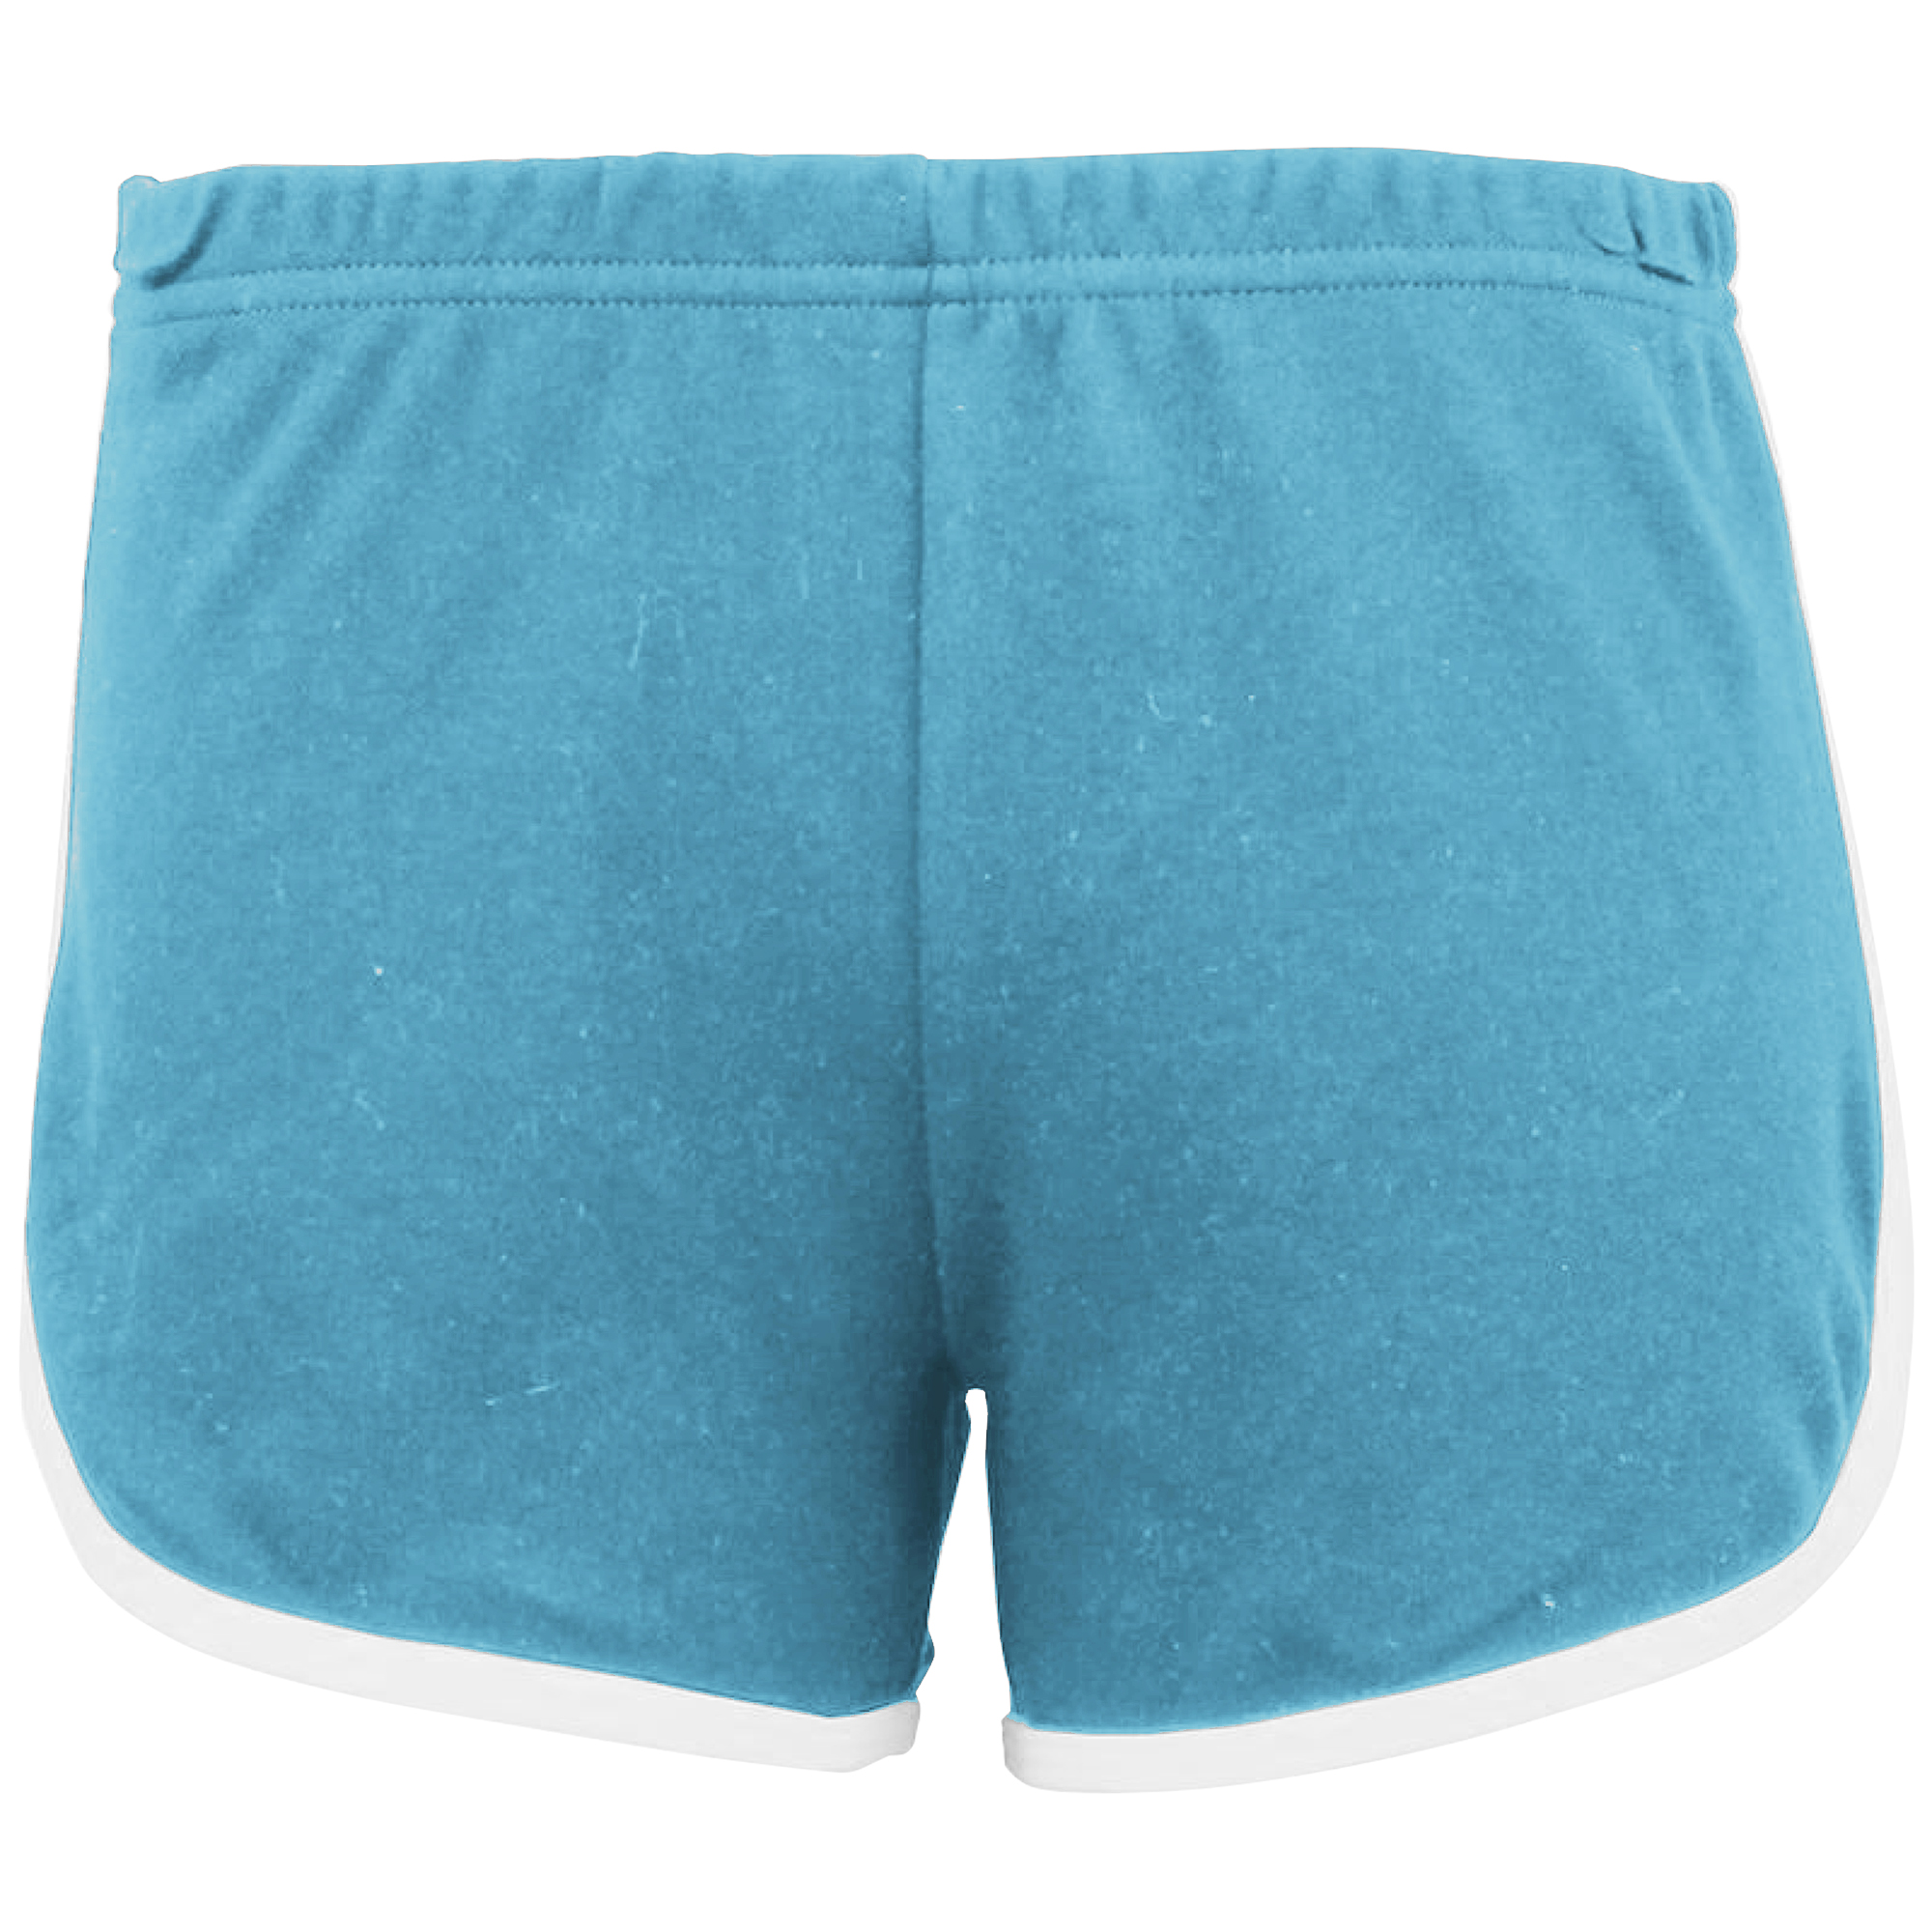 Pantalones Cortos American Apparel - azul - 